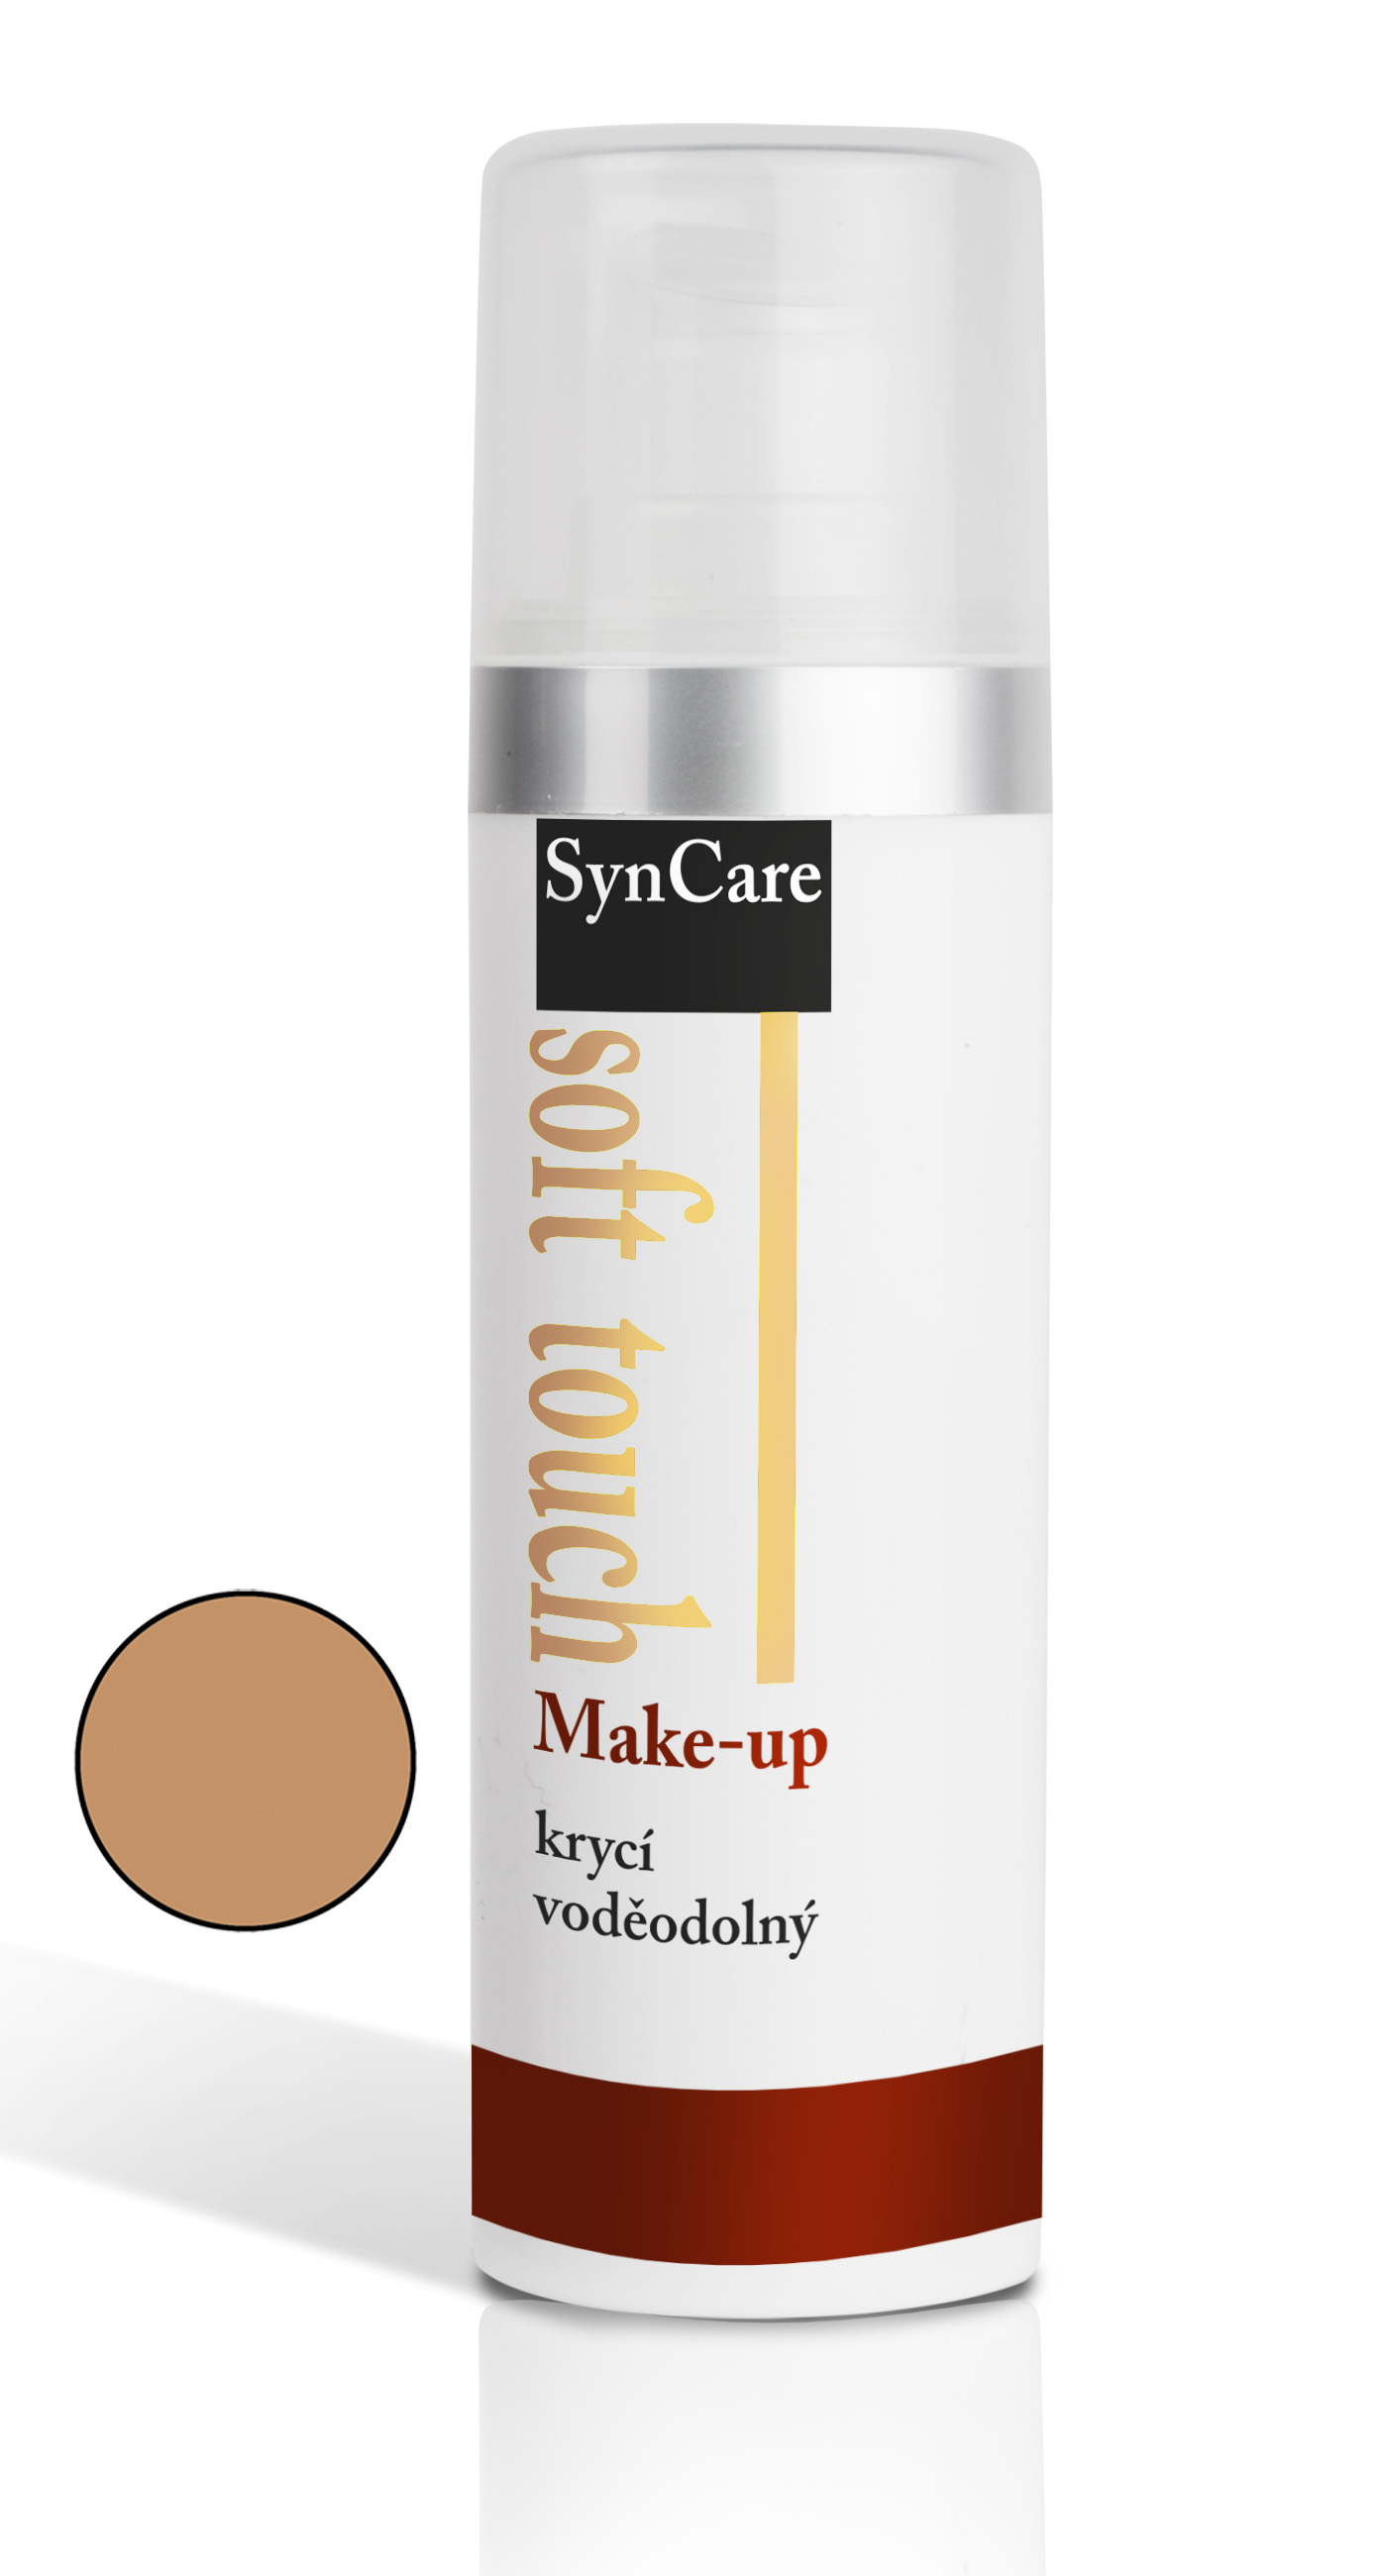 Soft Touch Make-up krycí voděodolný odstín 406 30ml